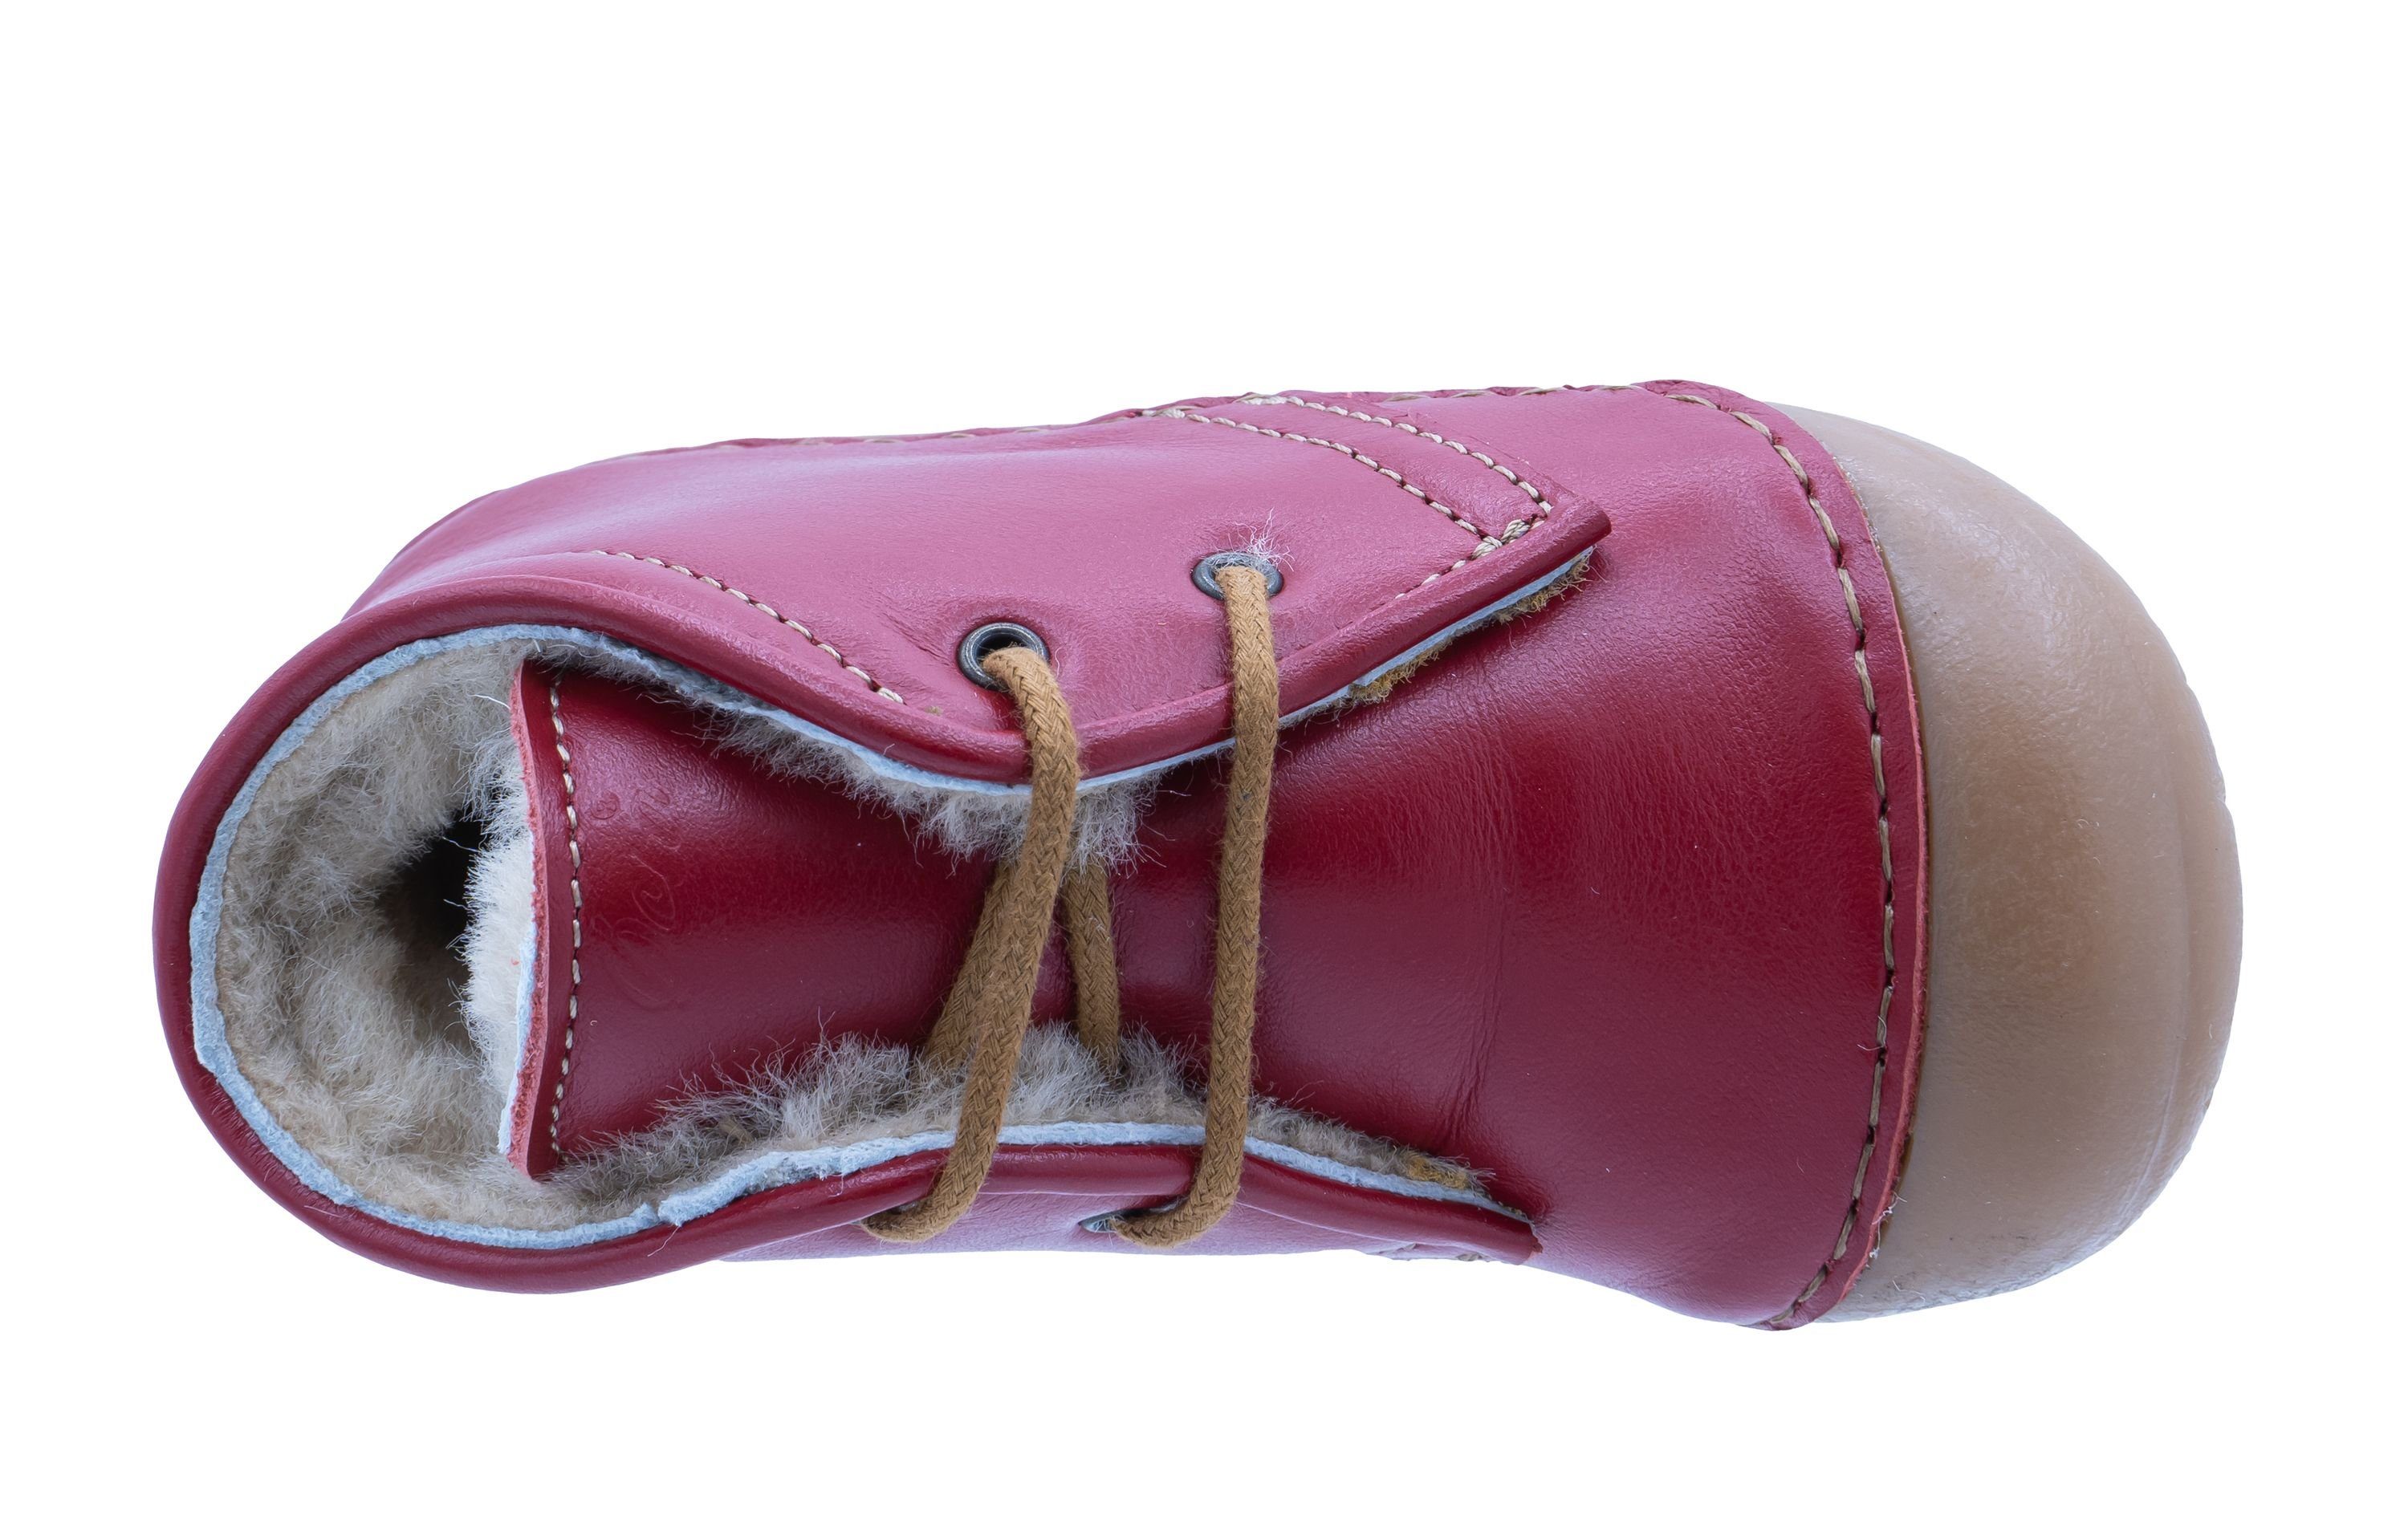 Ocra Ocra Schuhe Lauflernschuhe mit geg. Schnürstiefelette pflanz. Lammfell A330 rot